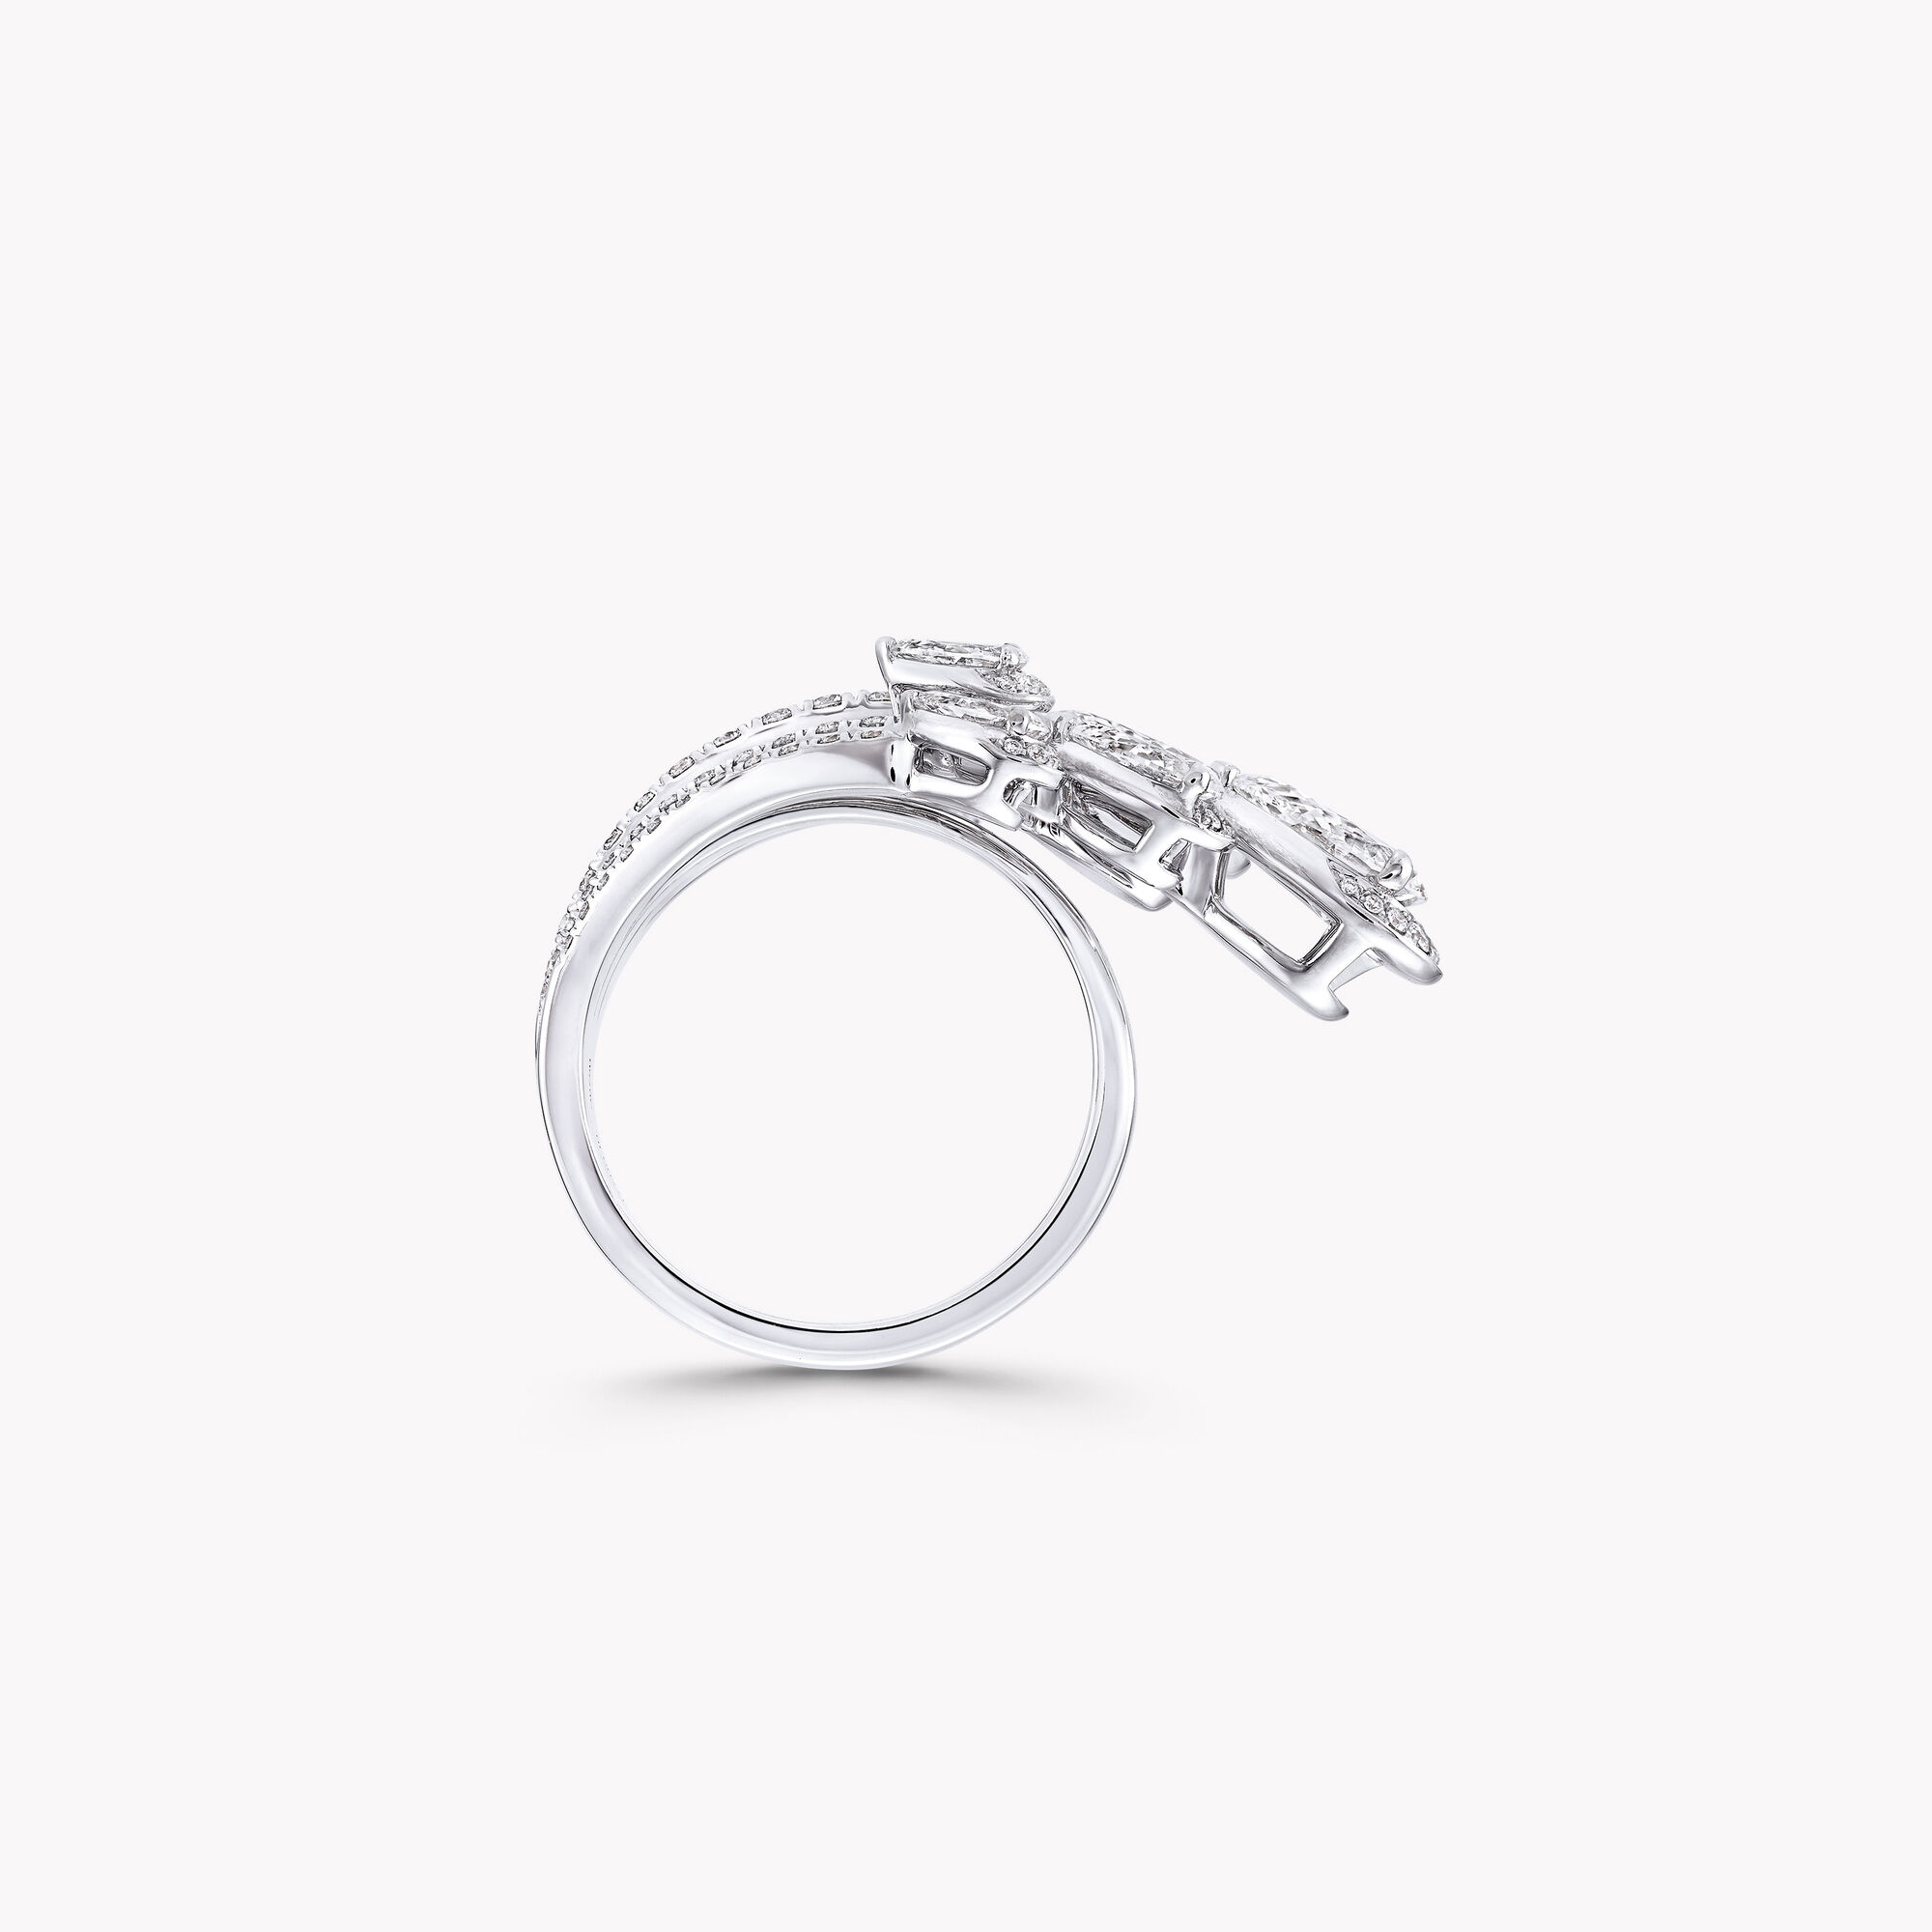 LOUIS VUITTON Empreinte Ring White Gold Diamond Size 51